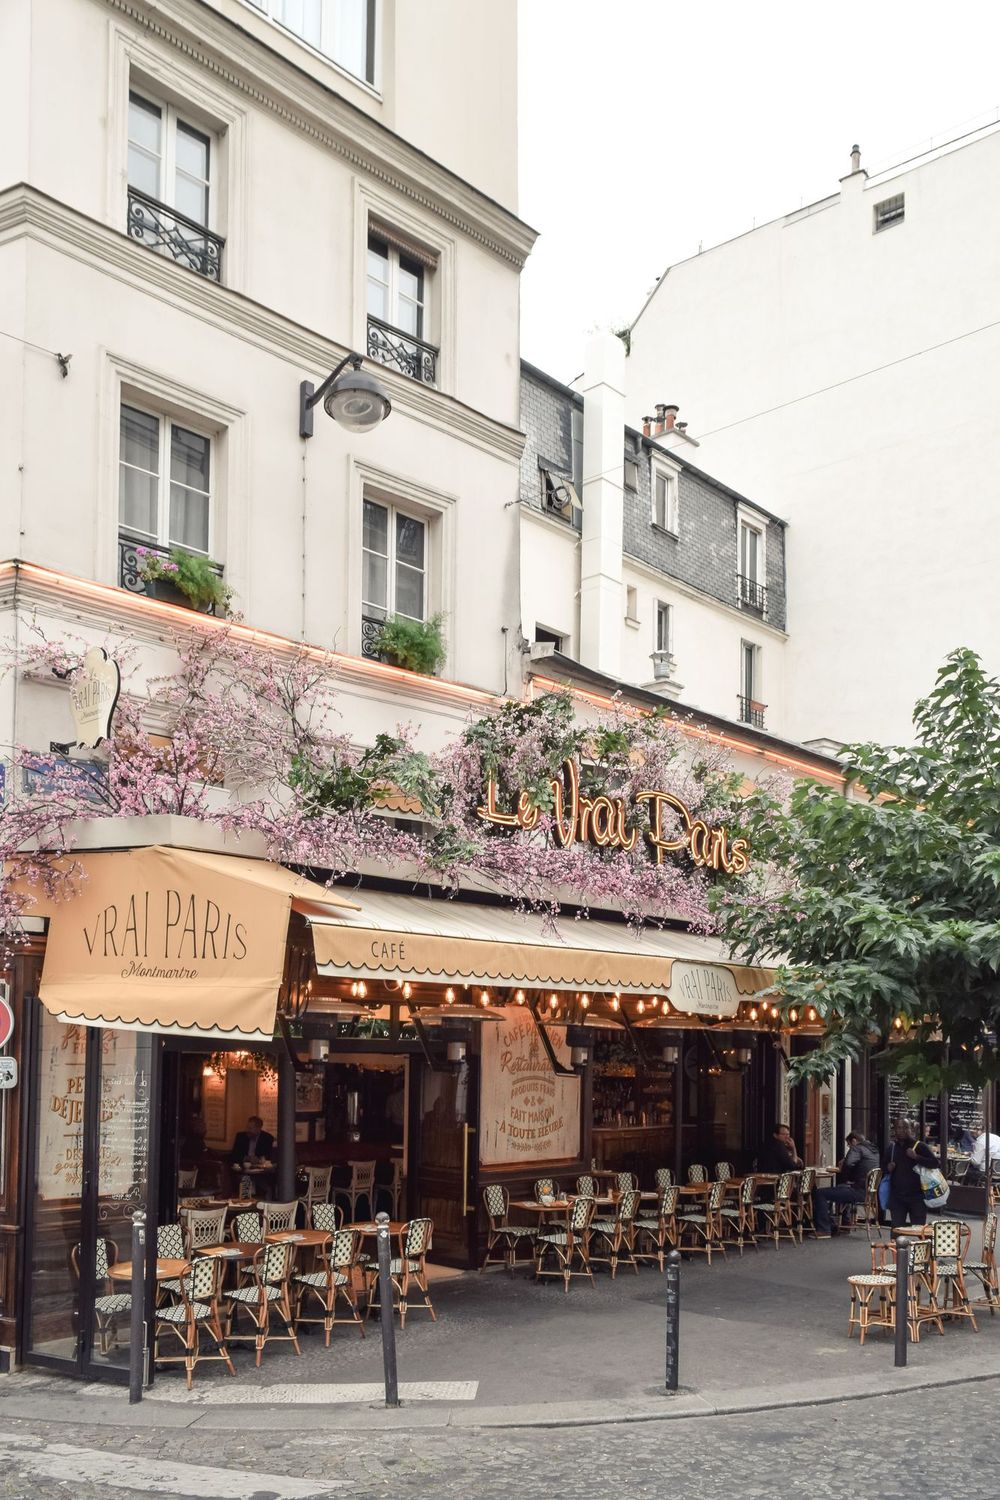 Le Vrai Paris Restaurant : An Adorable Bistrot in Montmartre